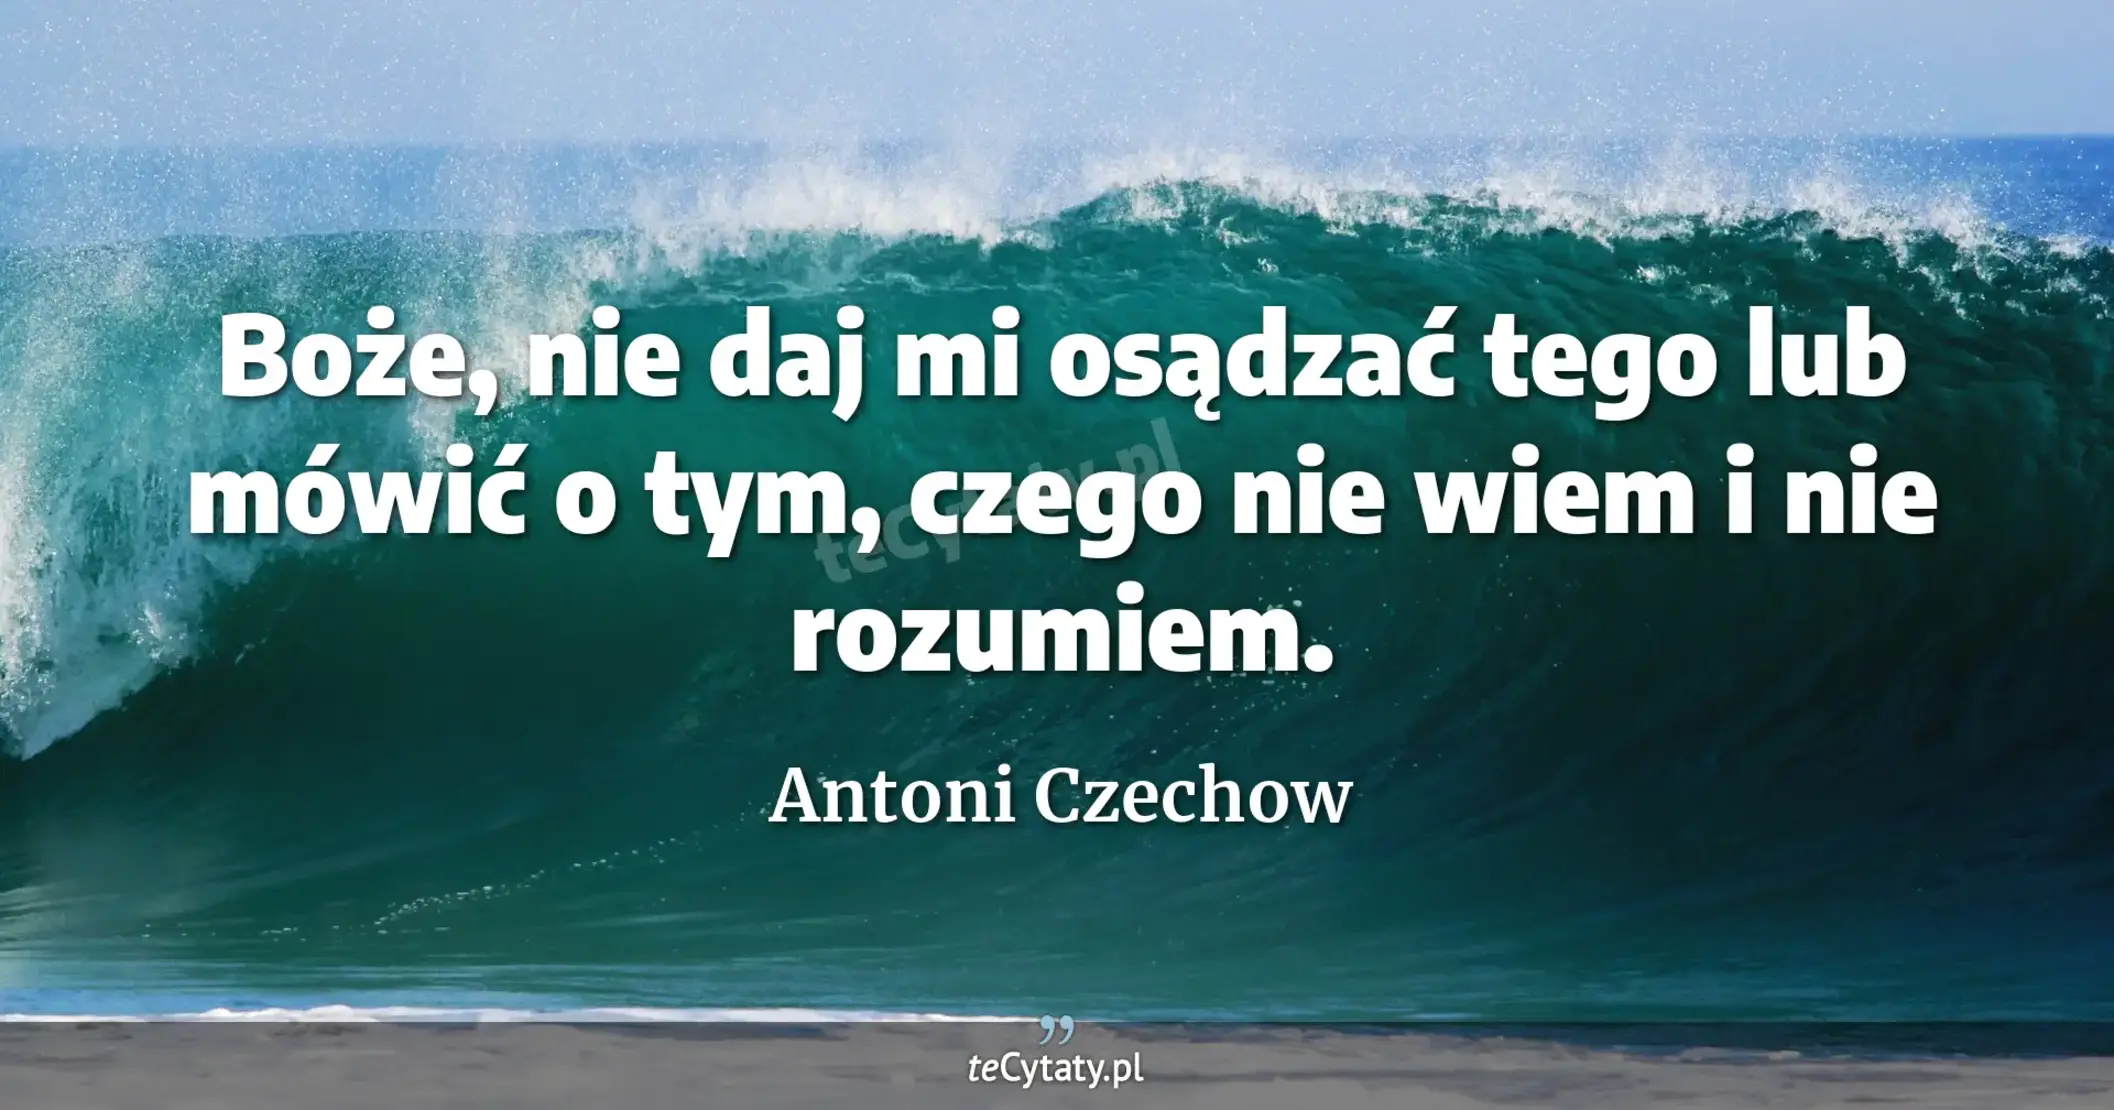 Boże, nie daj mi osądzać tego lub mówić o tym, czego nie wiem i nie rozumiem. - Antoni Czechow